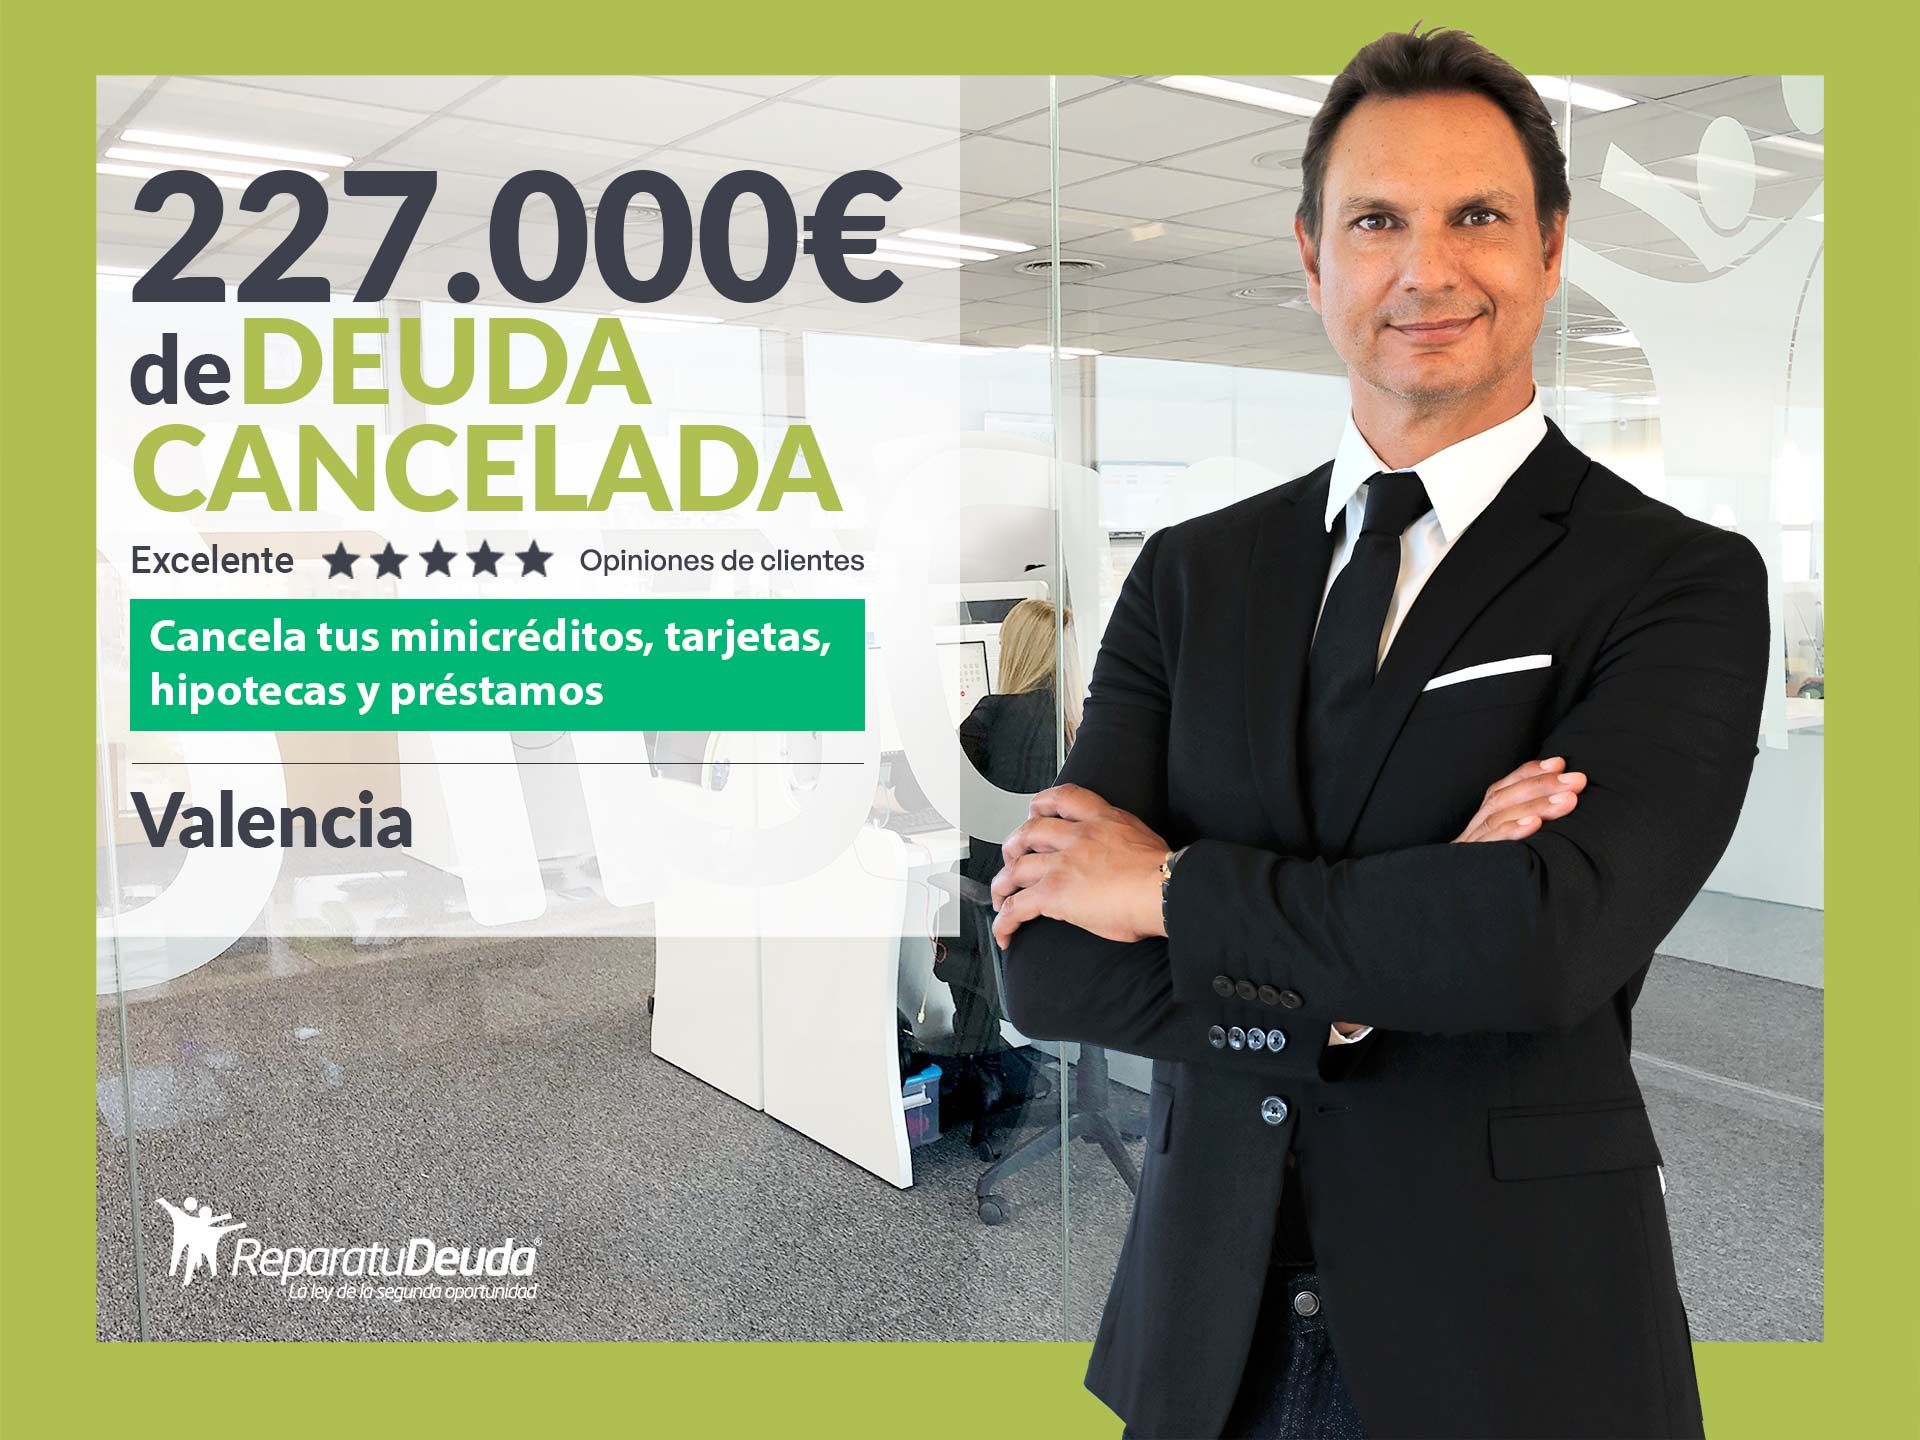 Repara tu Deuda Abogados cancela 227.000? en Valencia con la Ley de Segunda Oportunidad